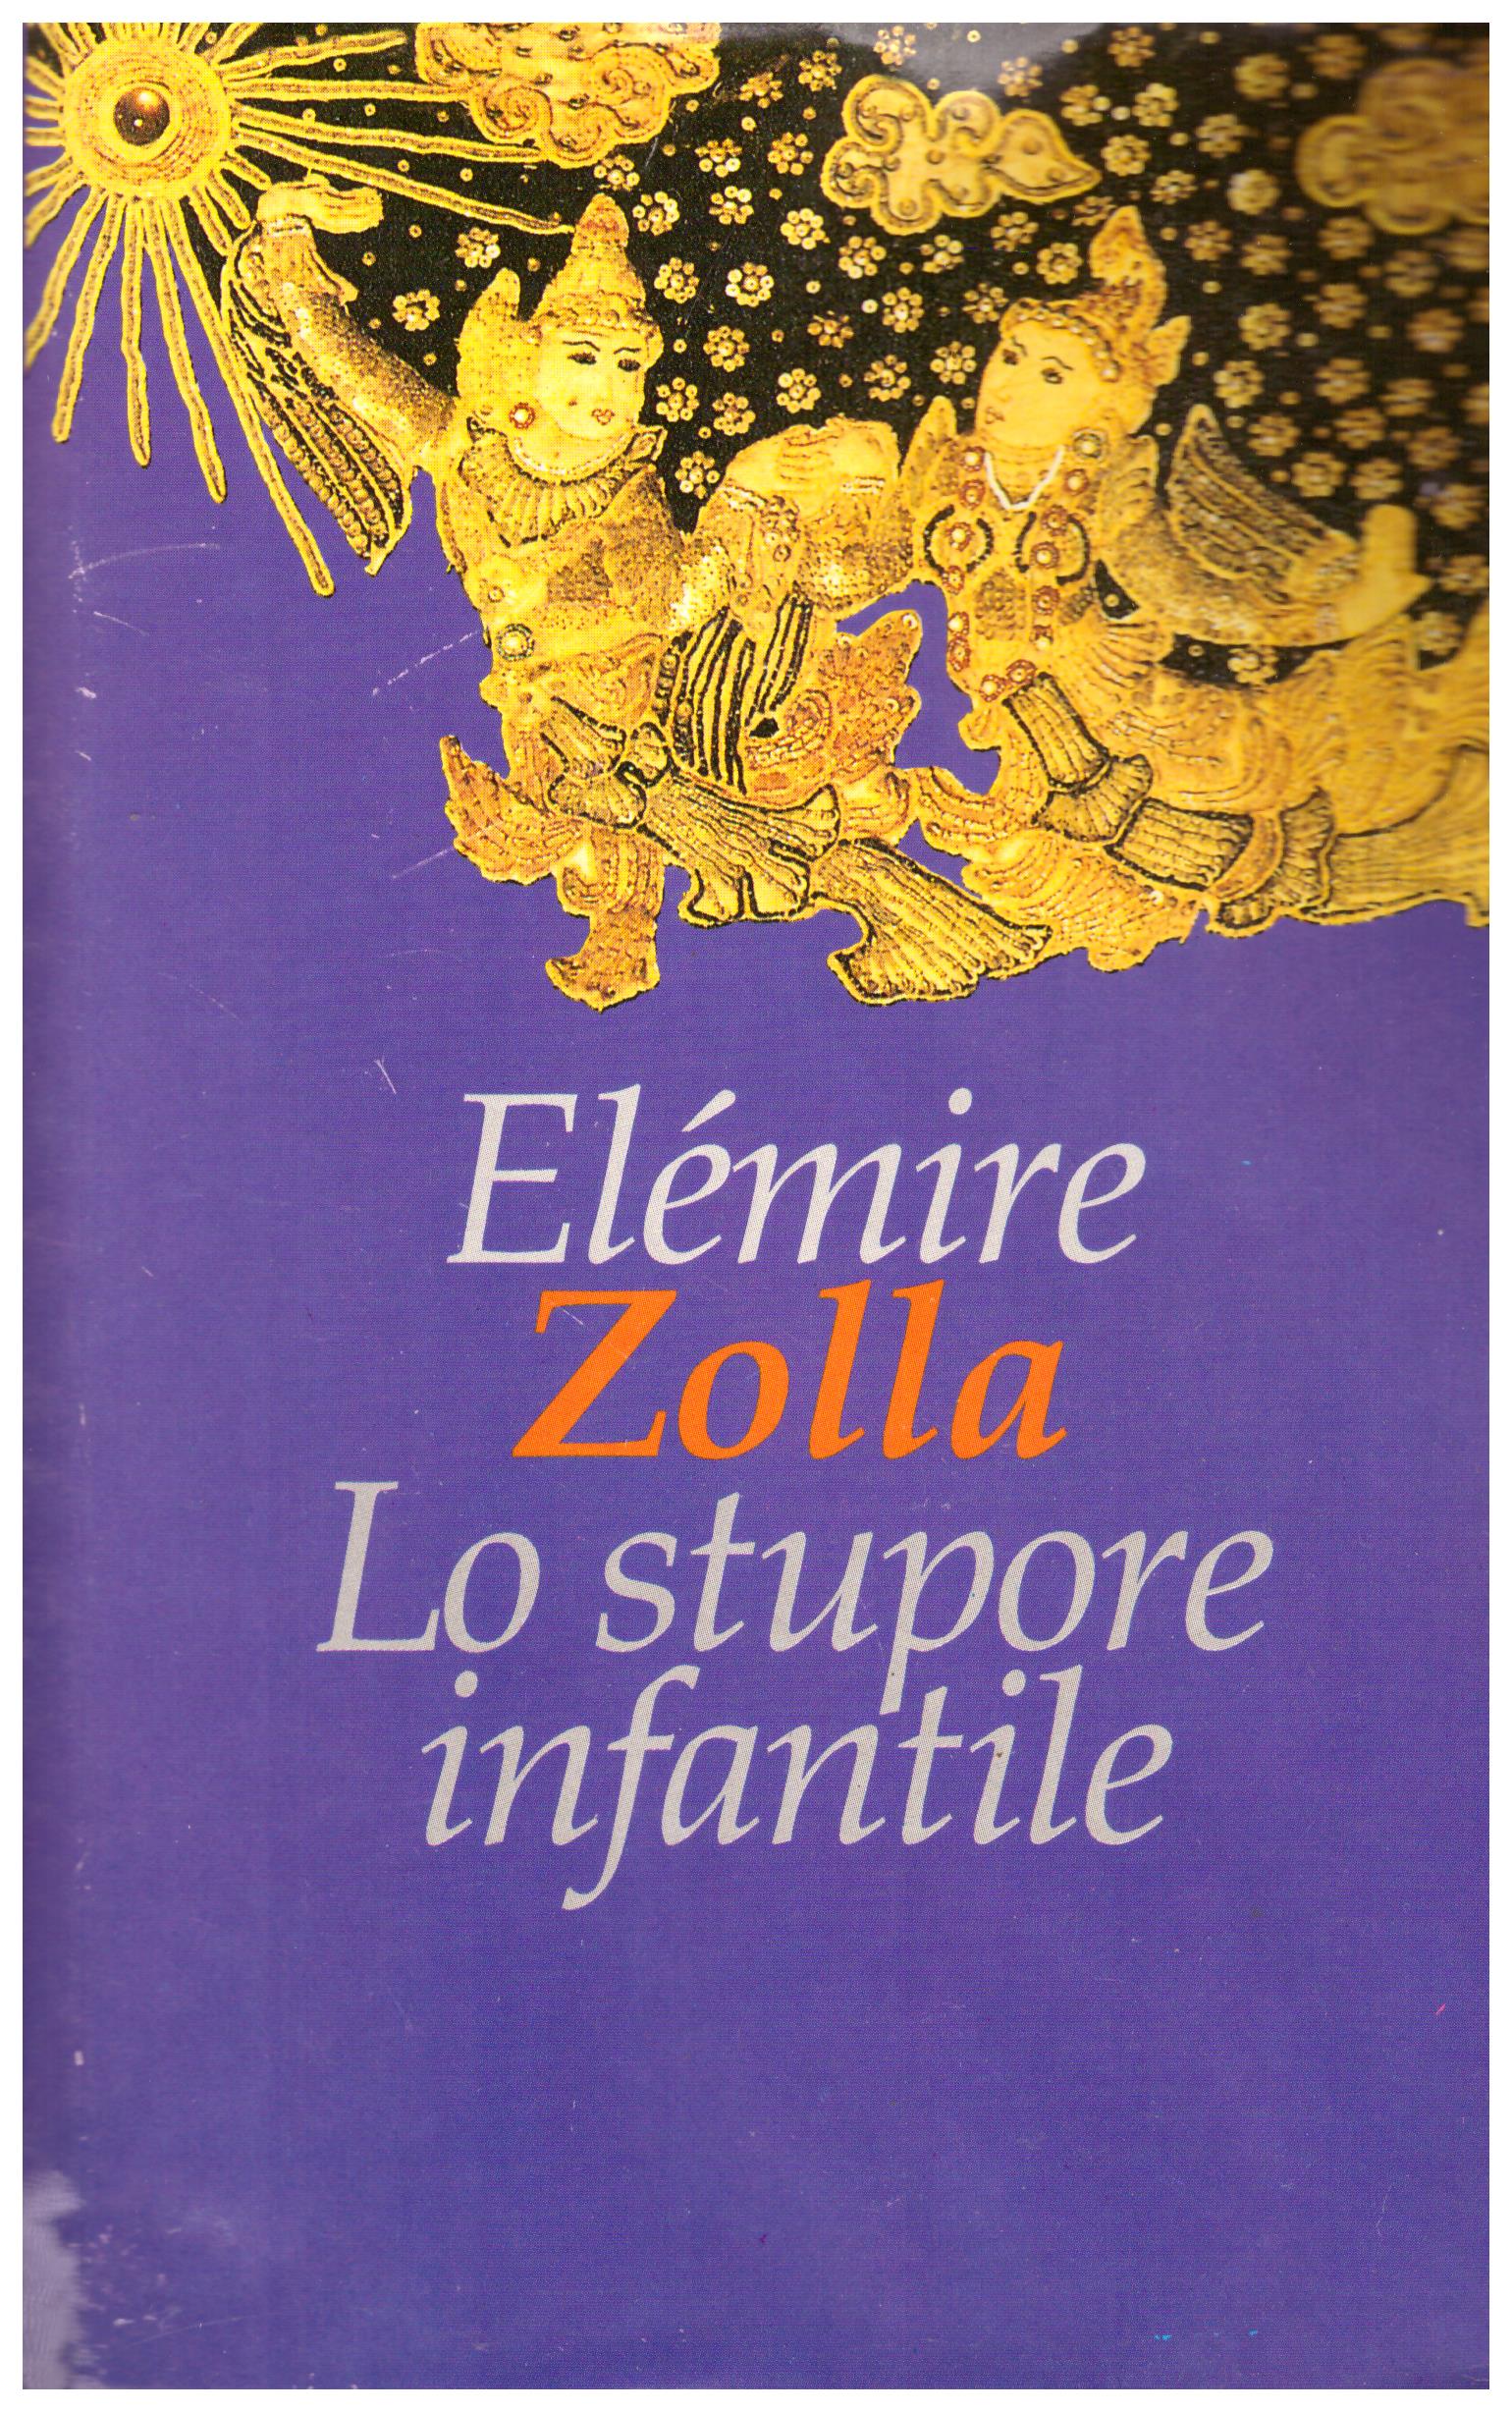 Titolo: Lo stupore infantile  Autore: Elemire Zolla  Editore: cde, 1995v